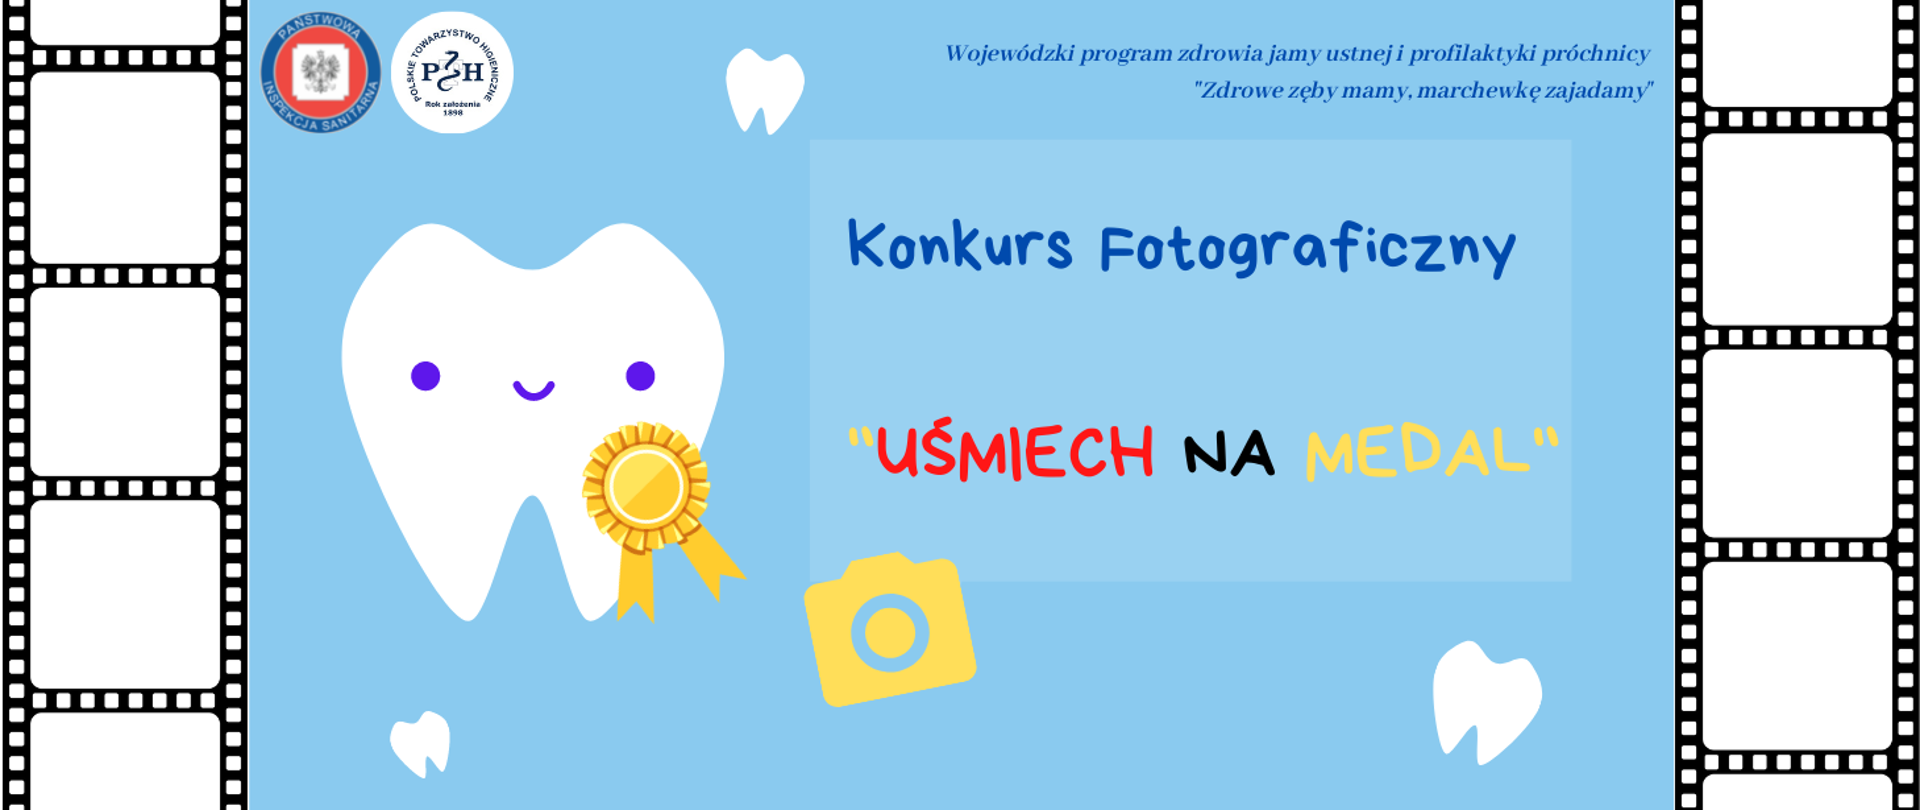 Konkurs fotograficzny "Uśmiech na medal"